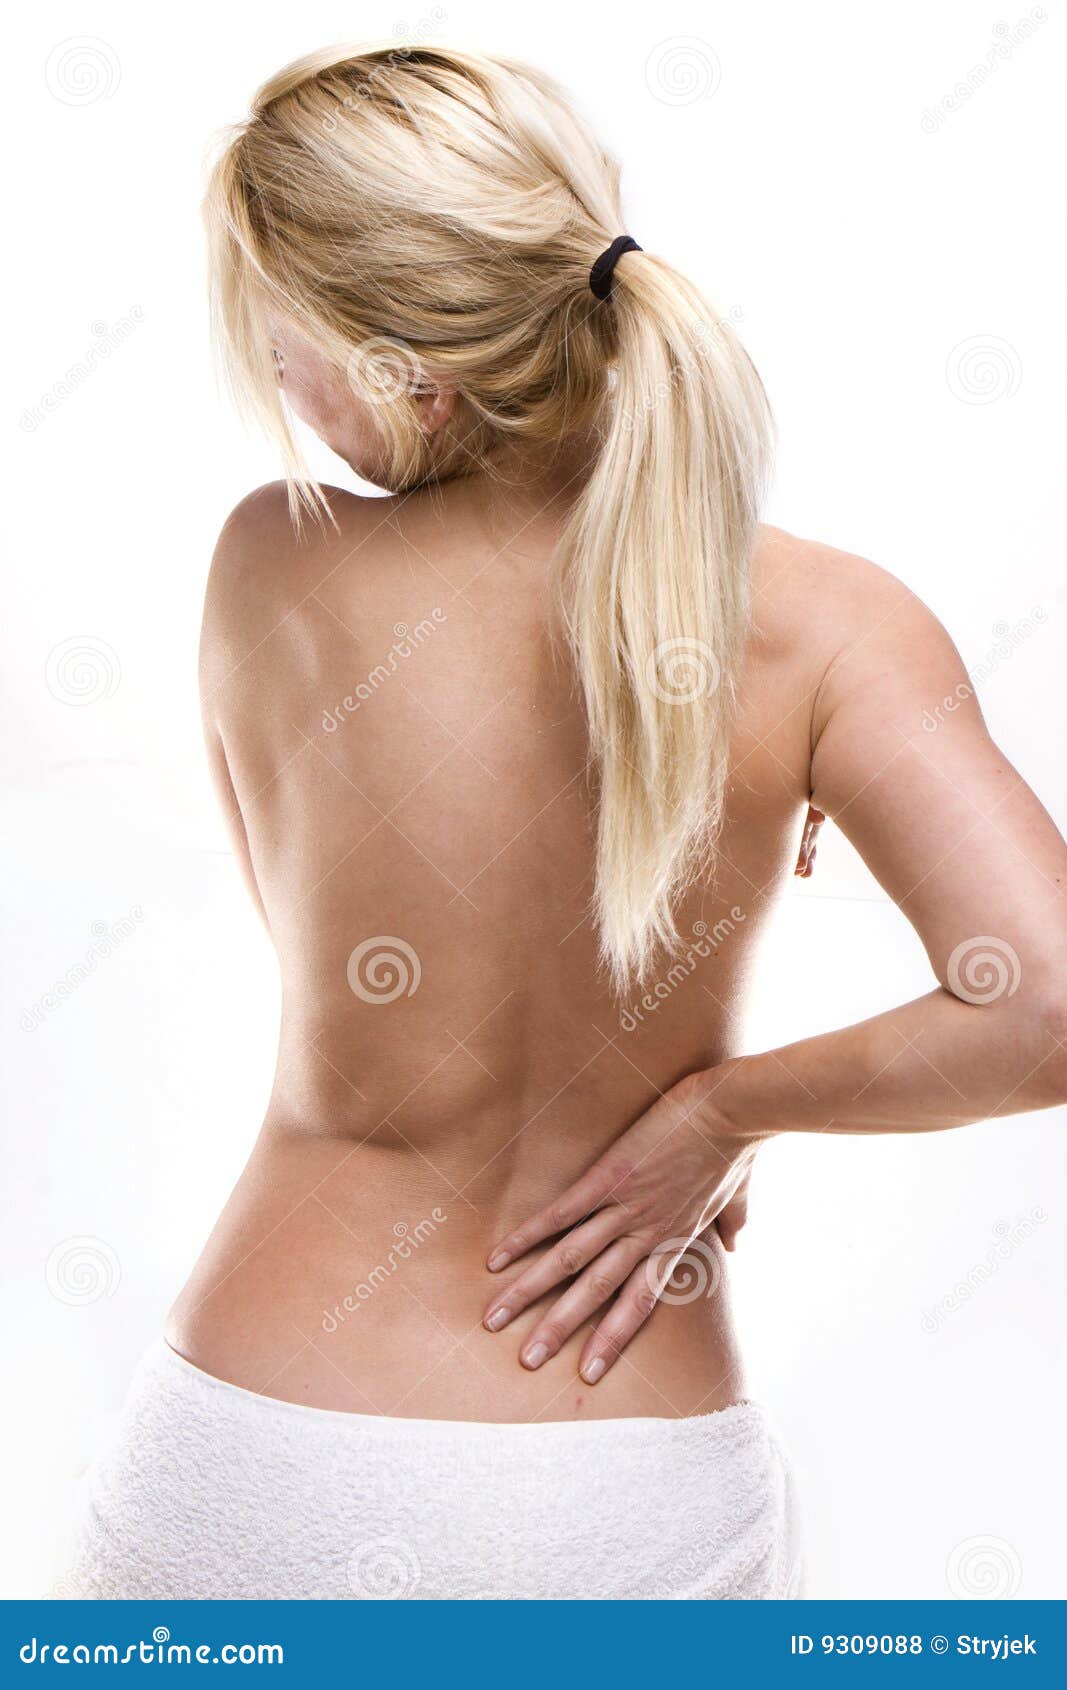 Женский back. Женская спина. Здоровая женская спина. Женщина со спины. Поясница фото.